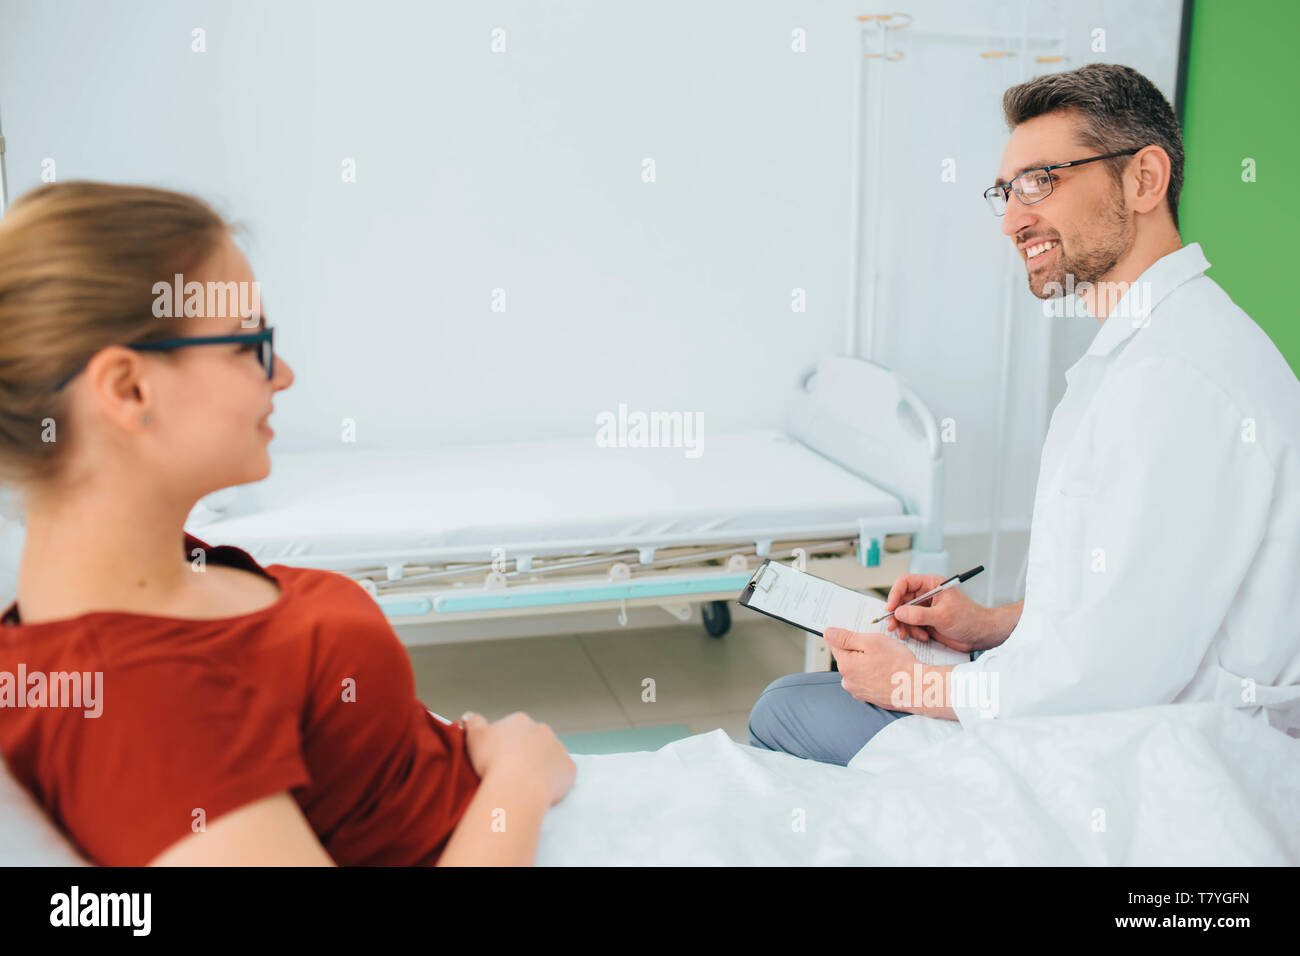 Männlicher Arzt in einem Gespräch mit einem lächelnden Patient in einem Krankenhaus Bett liegen Stockfoto